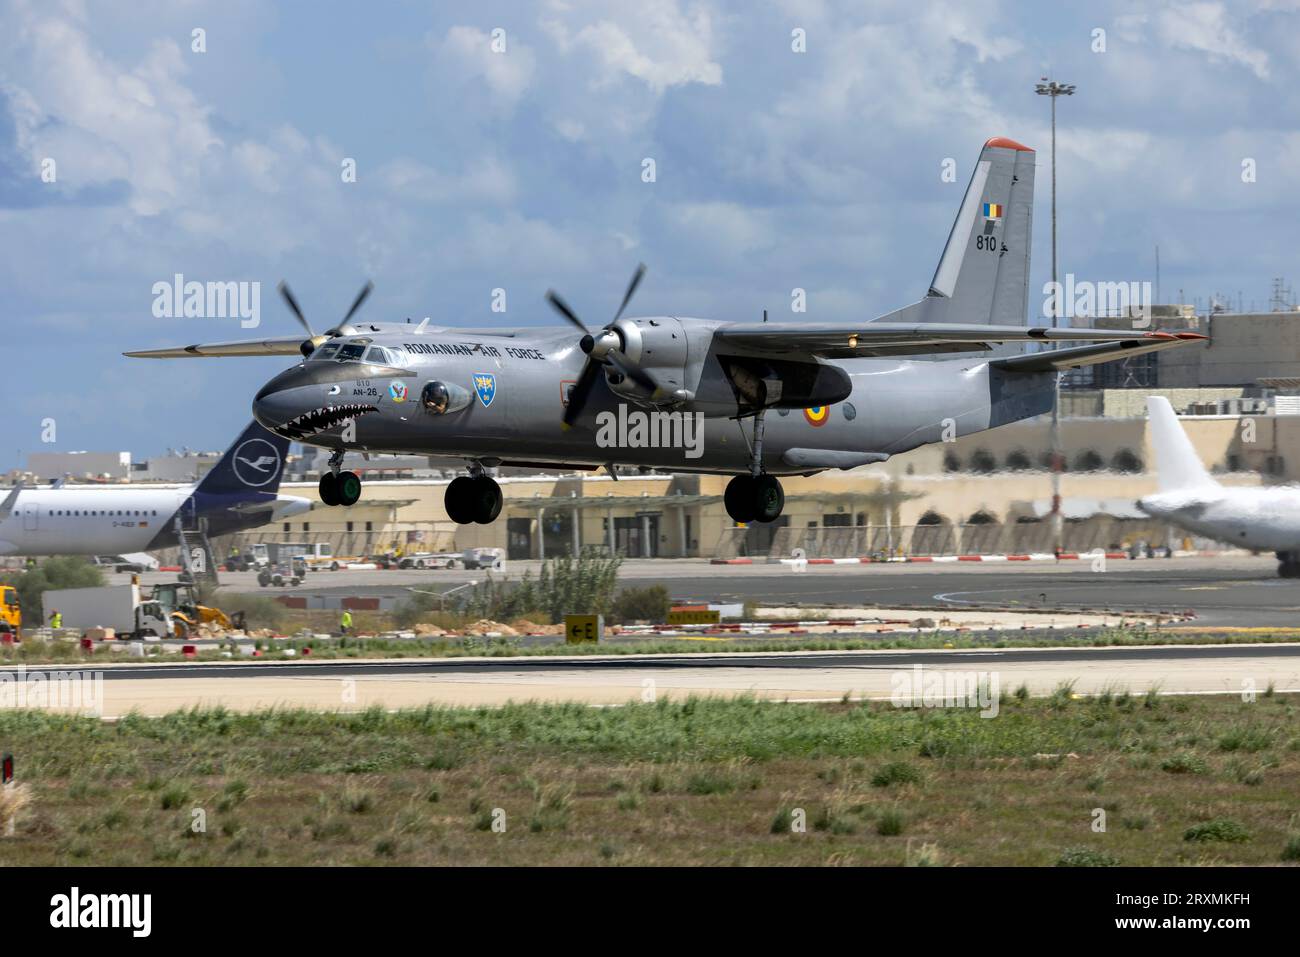 L'aeronautica rumena Antonov An-26 (Reg.: 810) lascia la pista 31 dopo aver partecipato all'esposizione statica di mia 2023. Foto Stock